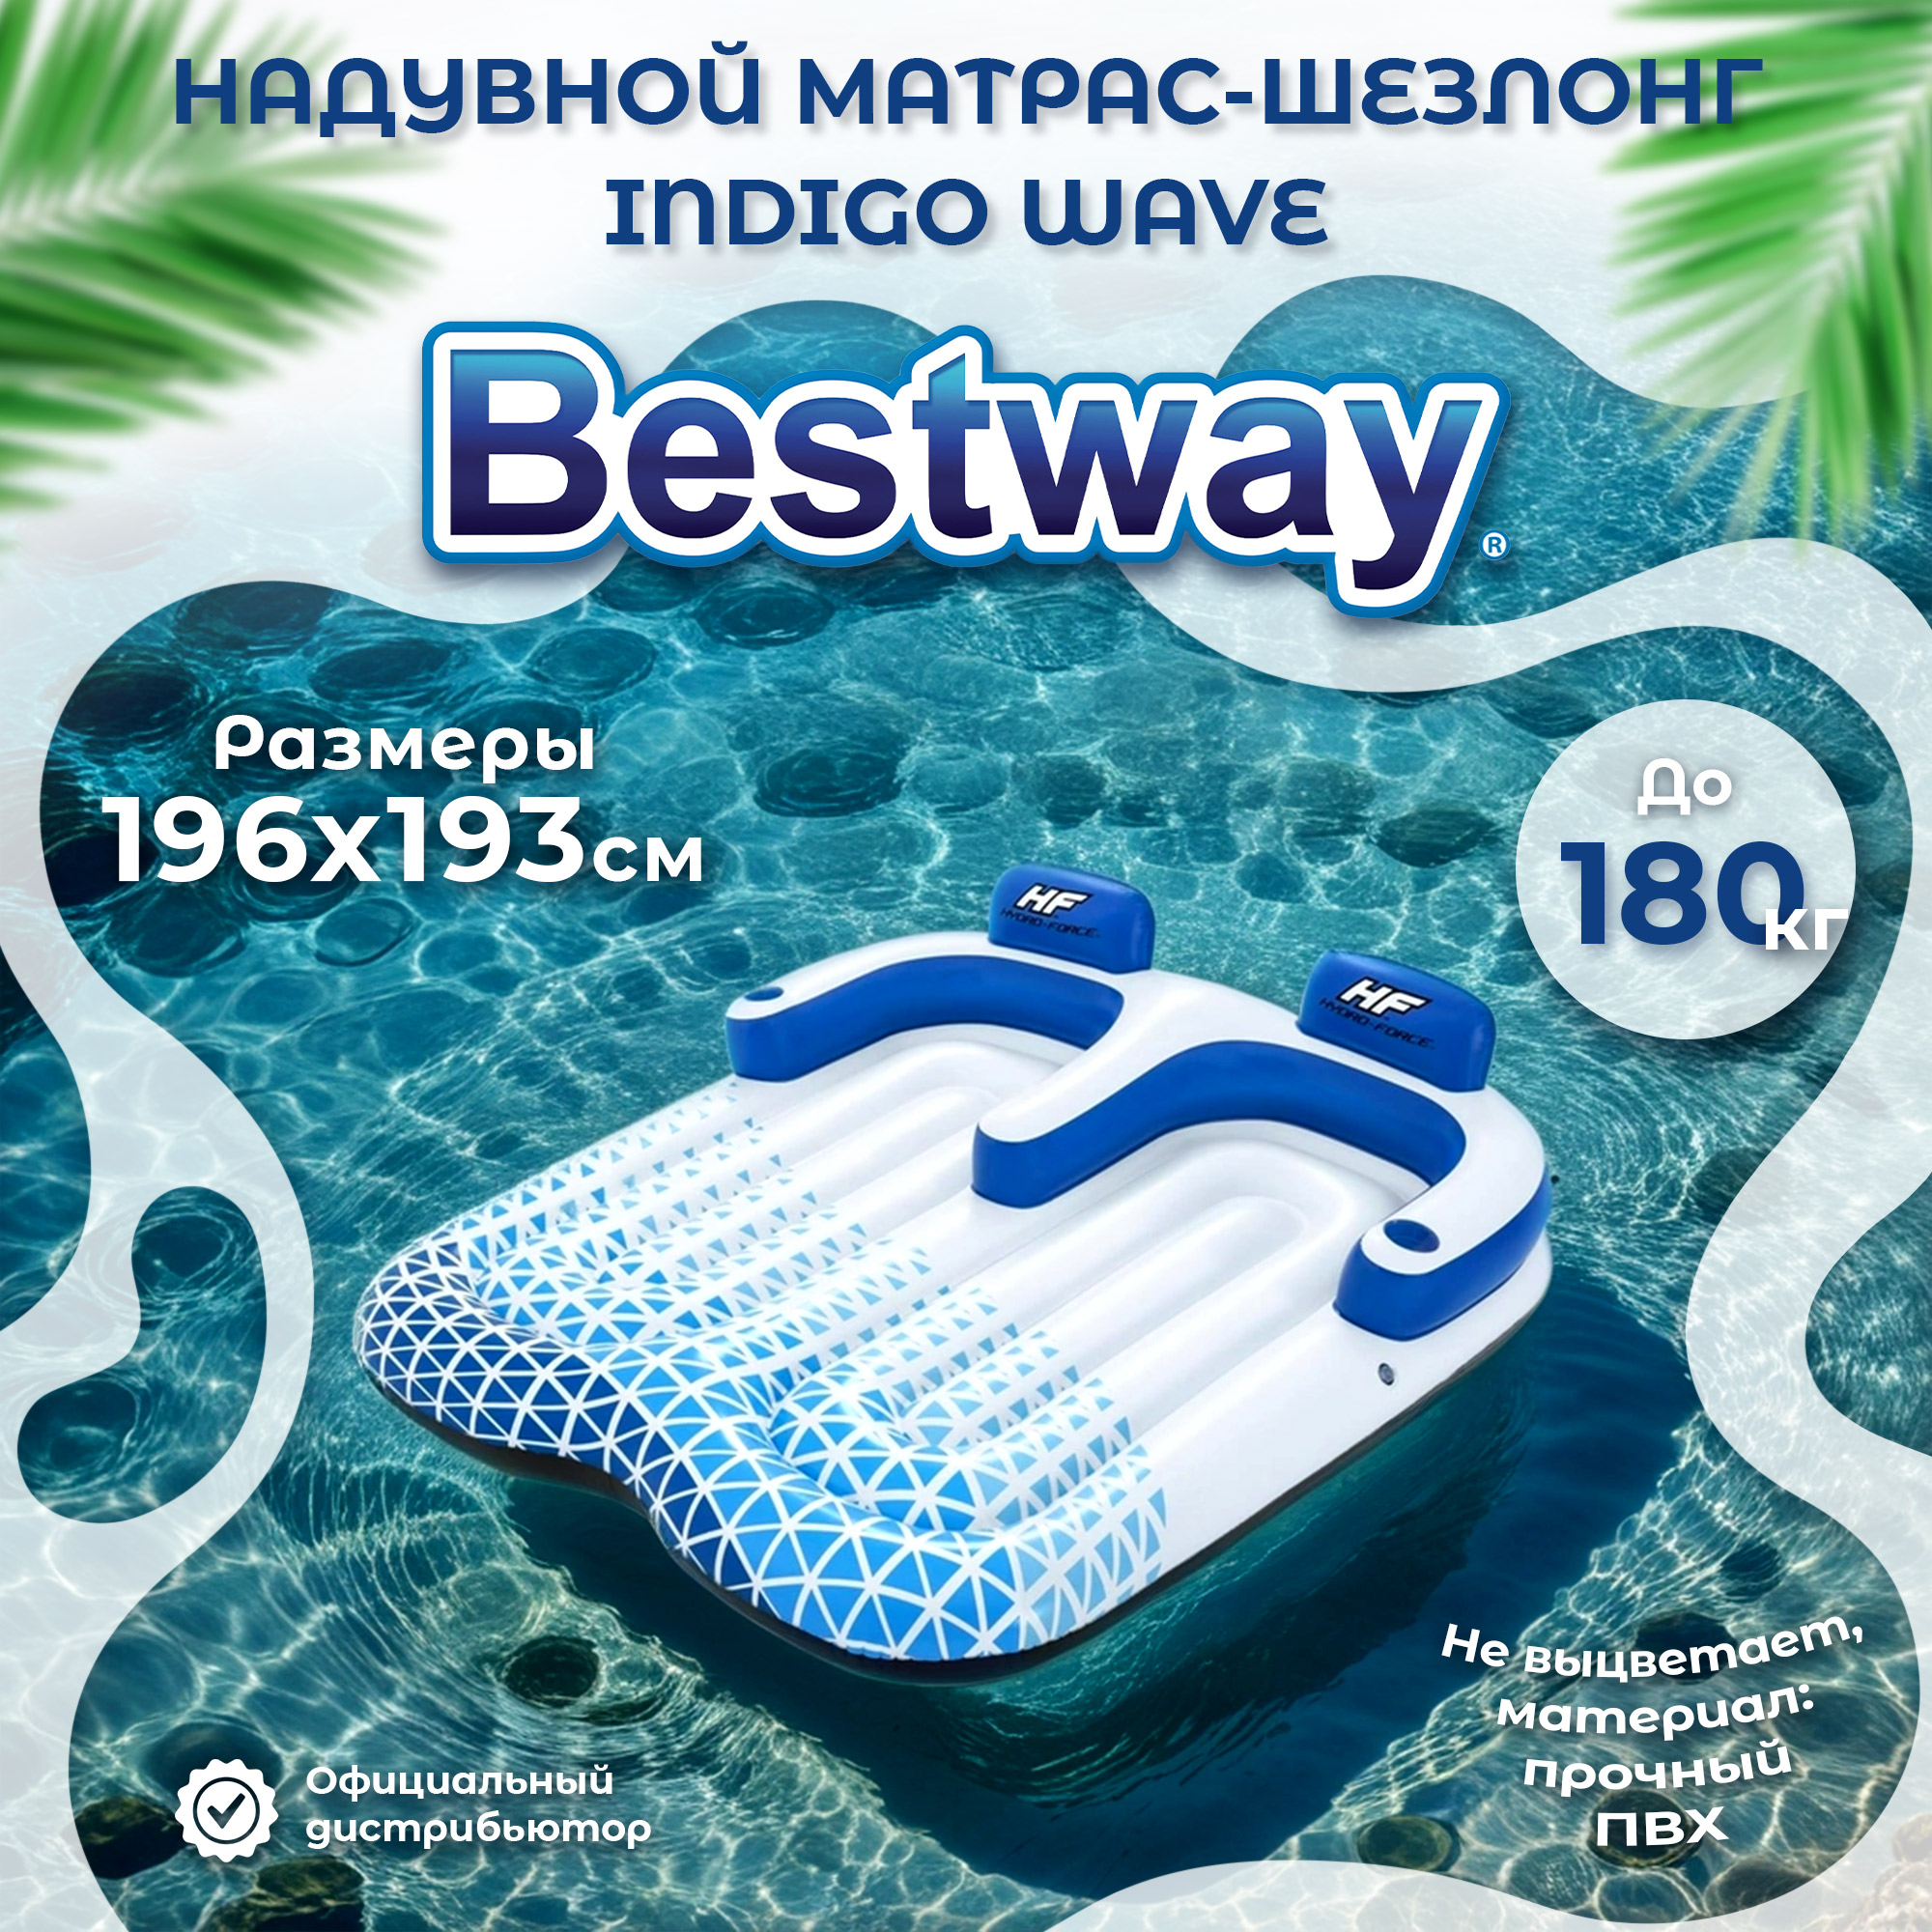 Матрас шезлонг Bestway двойной Волна индиго 1,96x1,93 м, цвет белый - фото 2